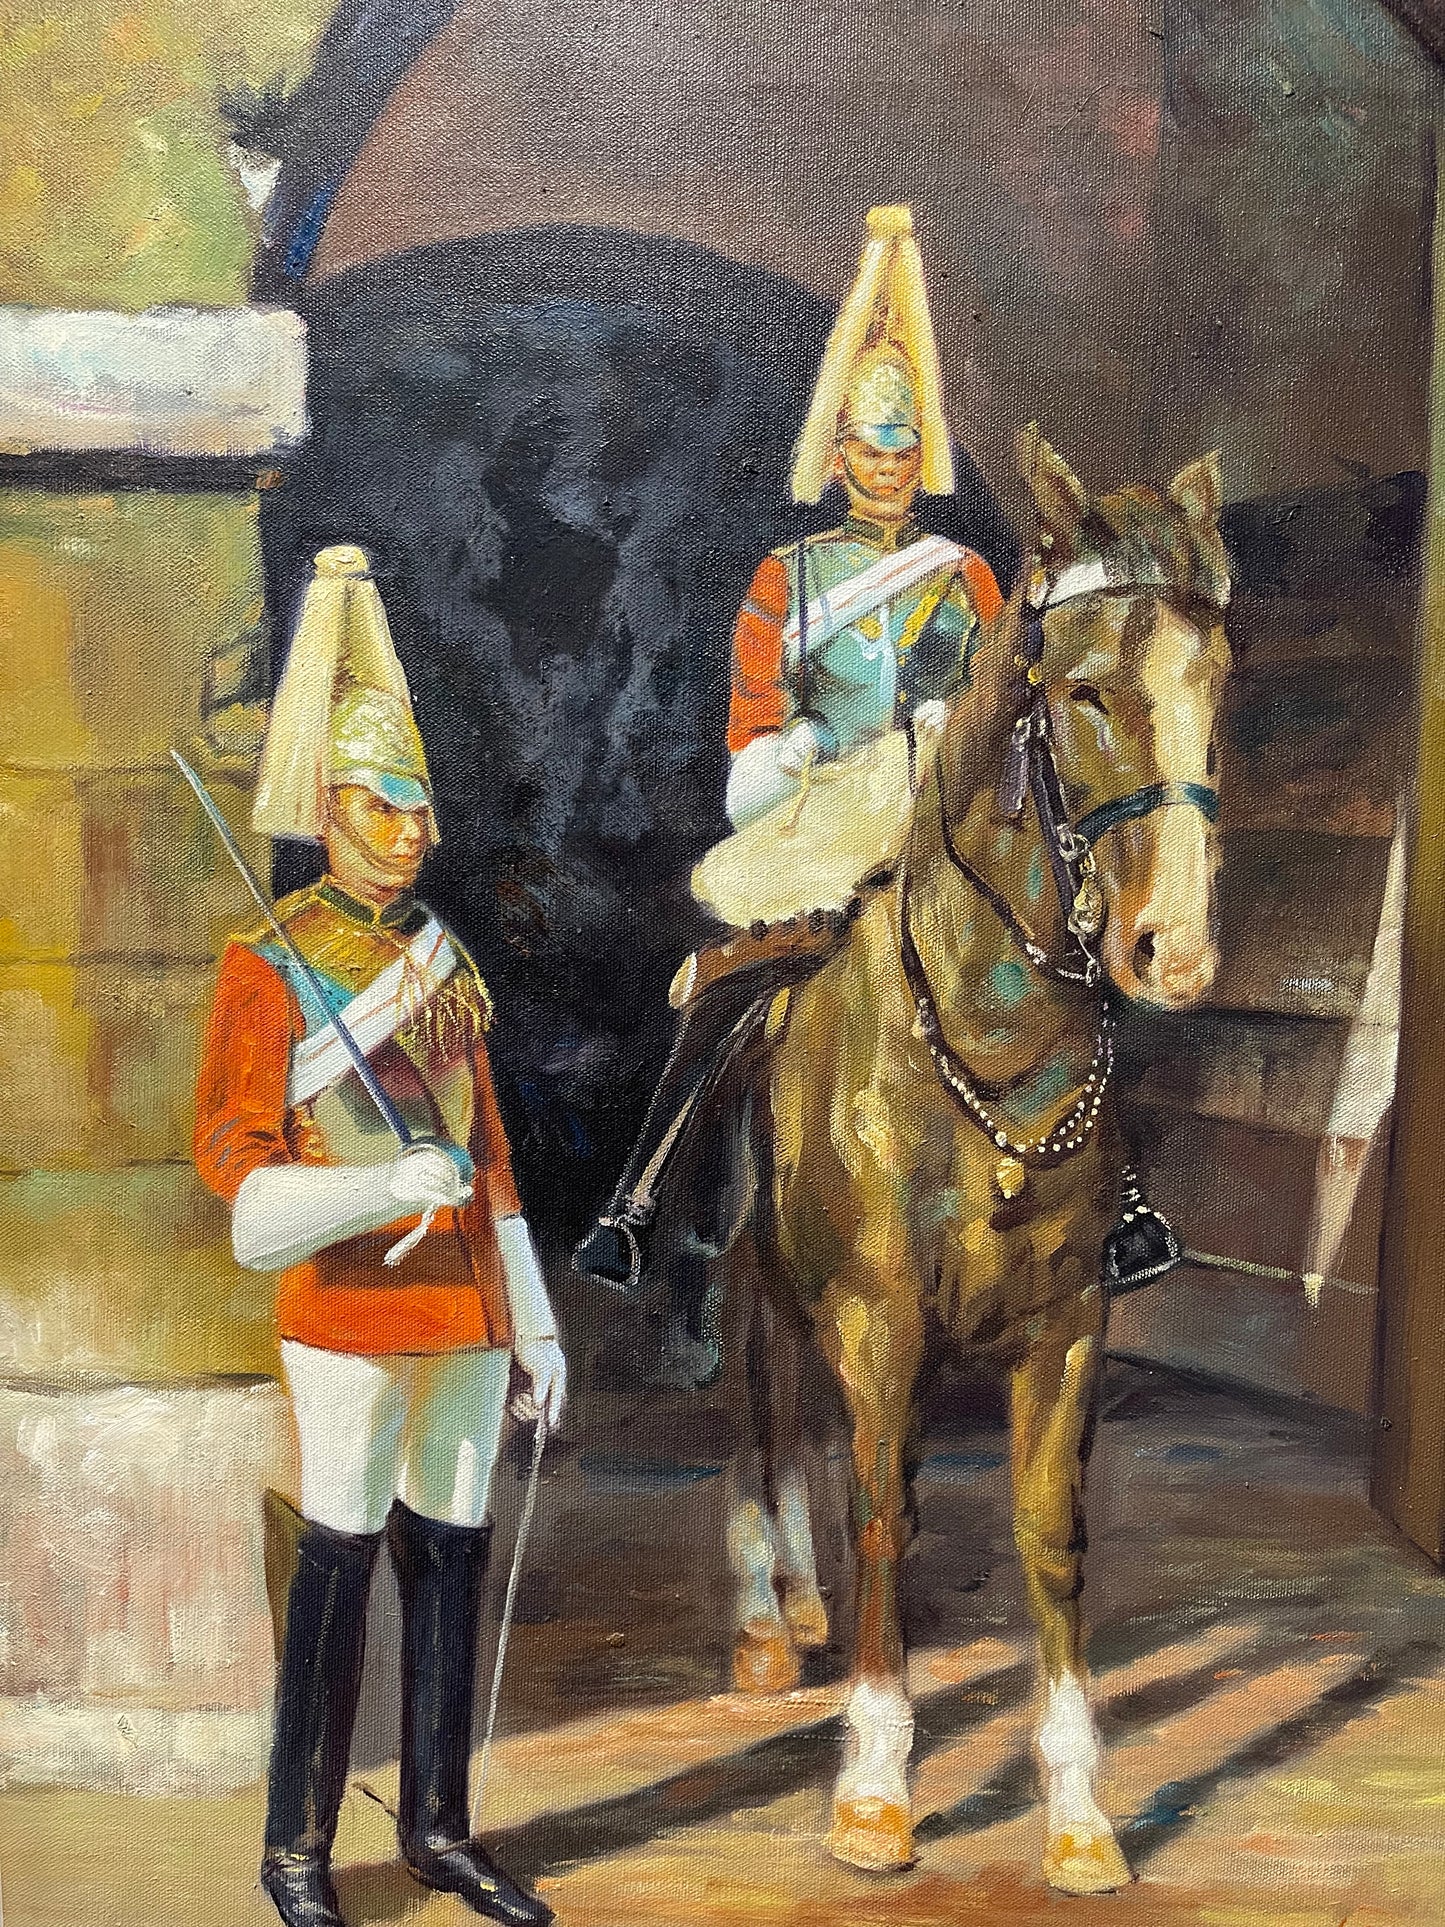 Dipinto a olio degli anni '70 - Guardie a cavallo, St James Palace di Londra